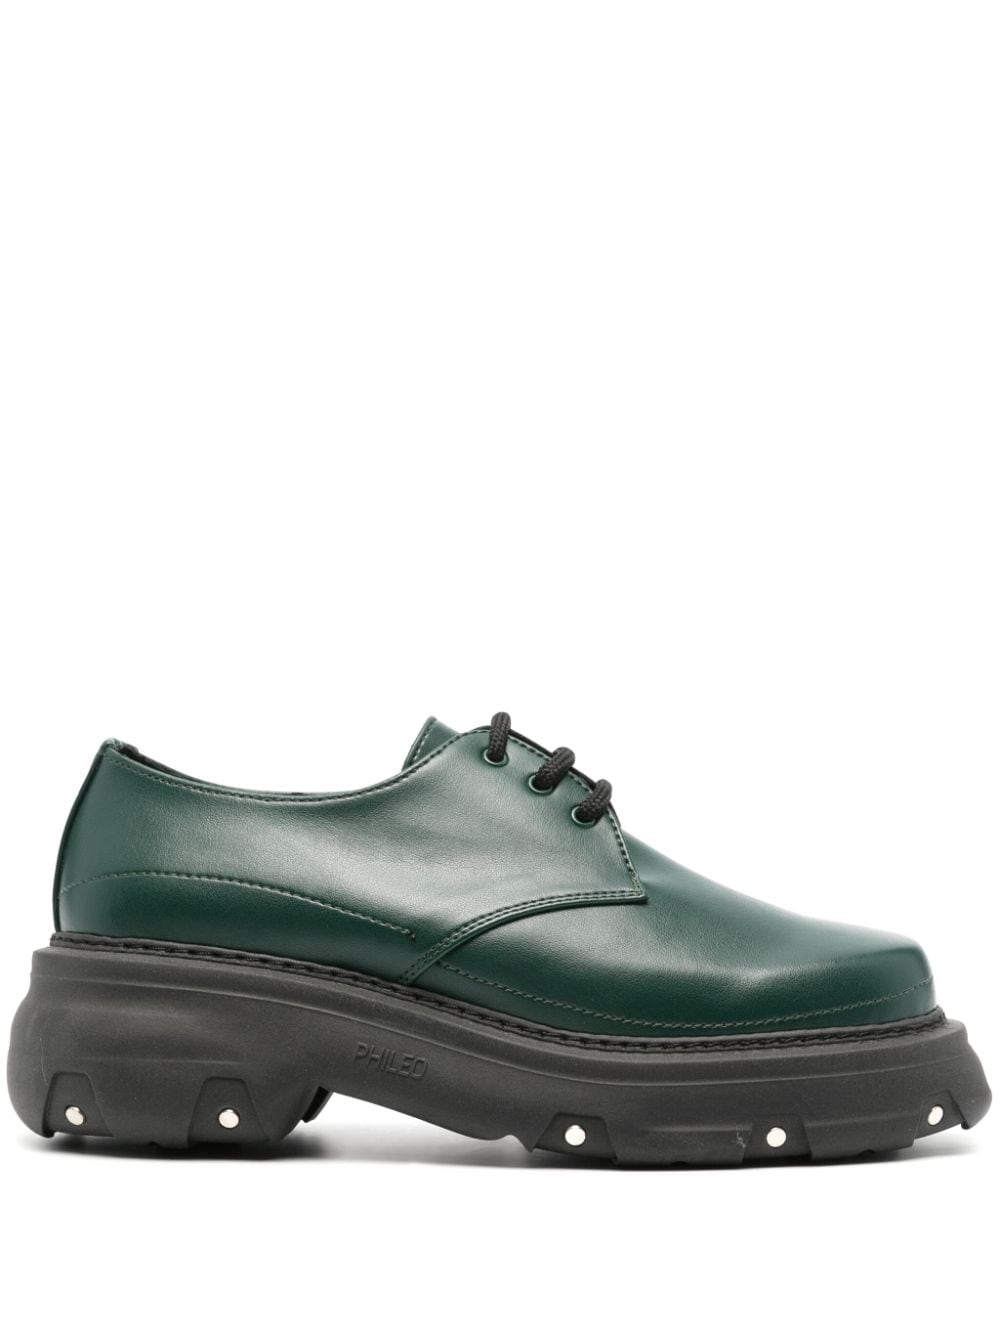 PHILEO 60mm AppleSkin™ platform Derby shoes - Green von PHILEO